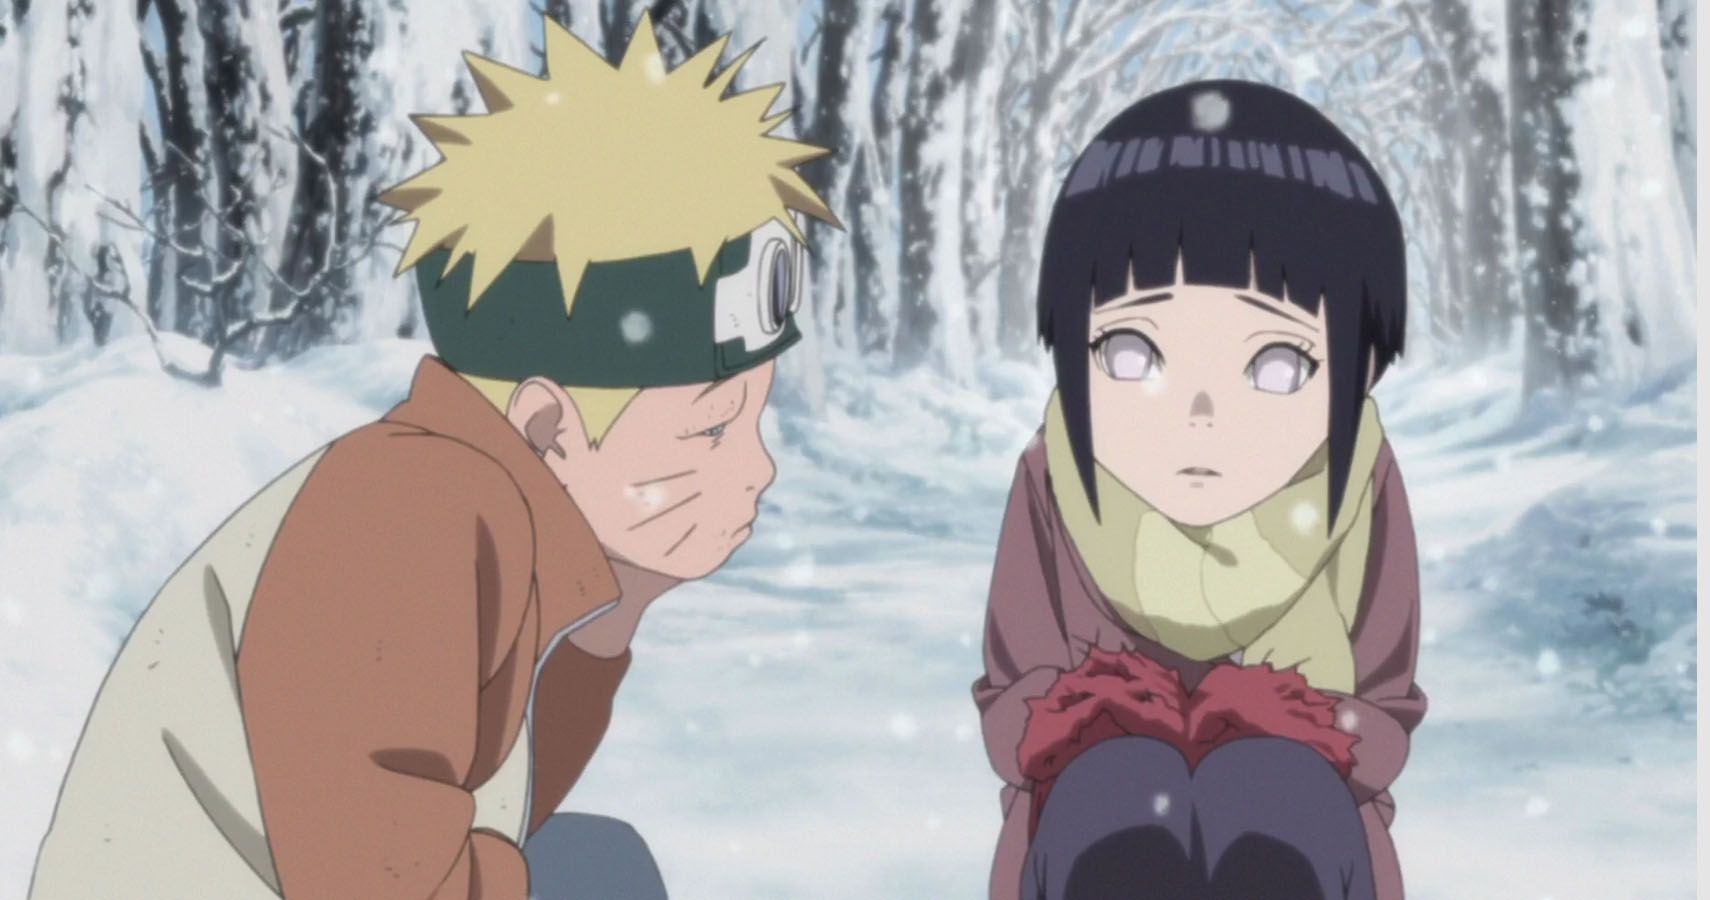 Naruto and Hinata  naruto and hinata aww they look so cute